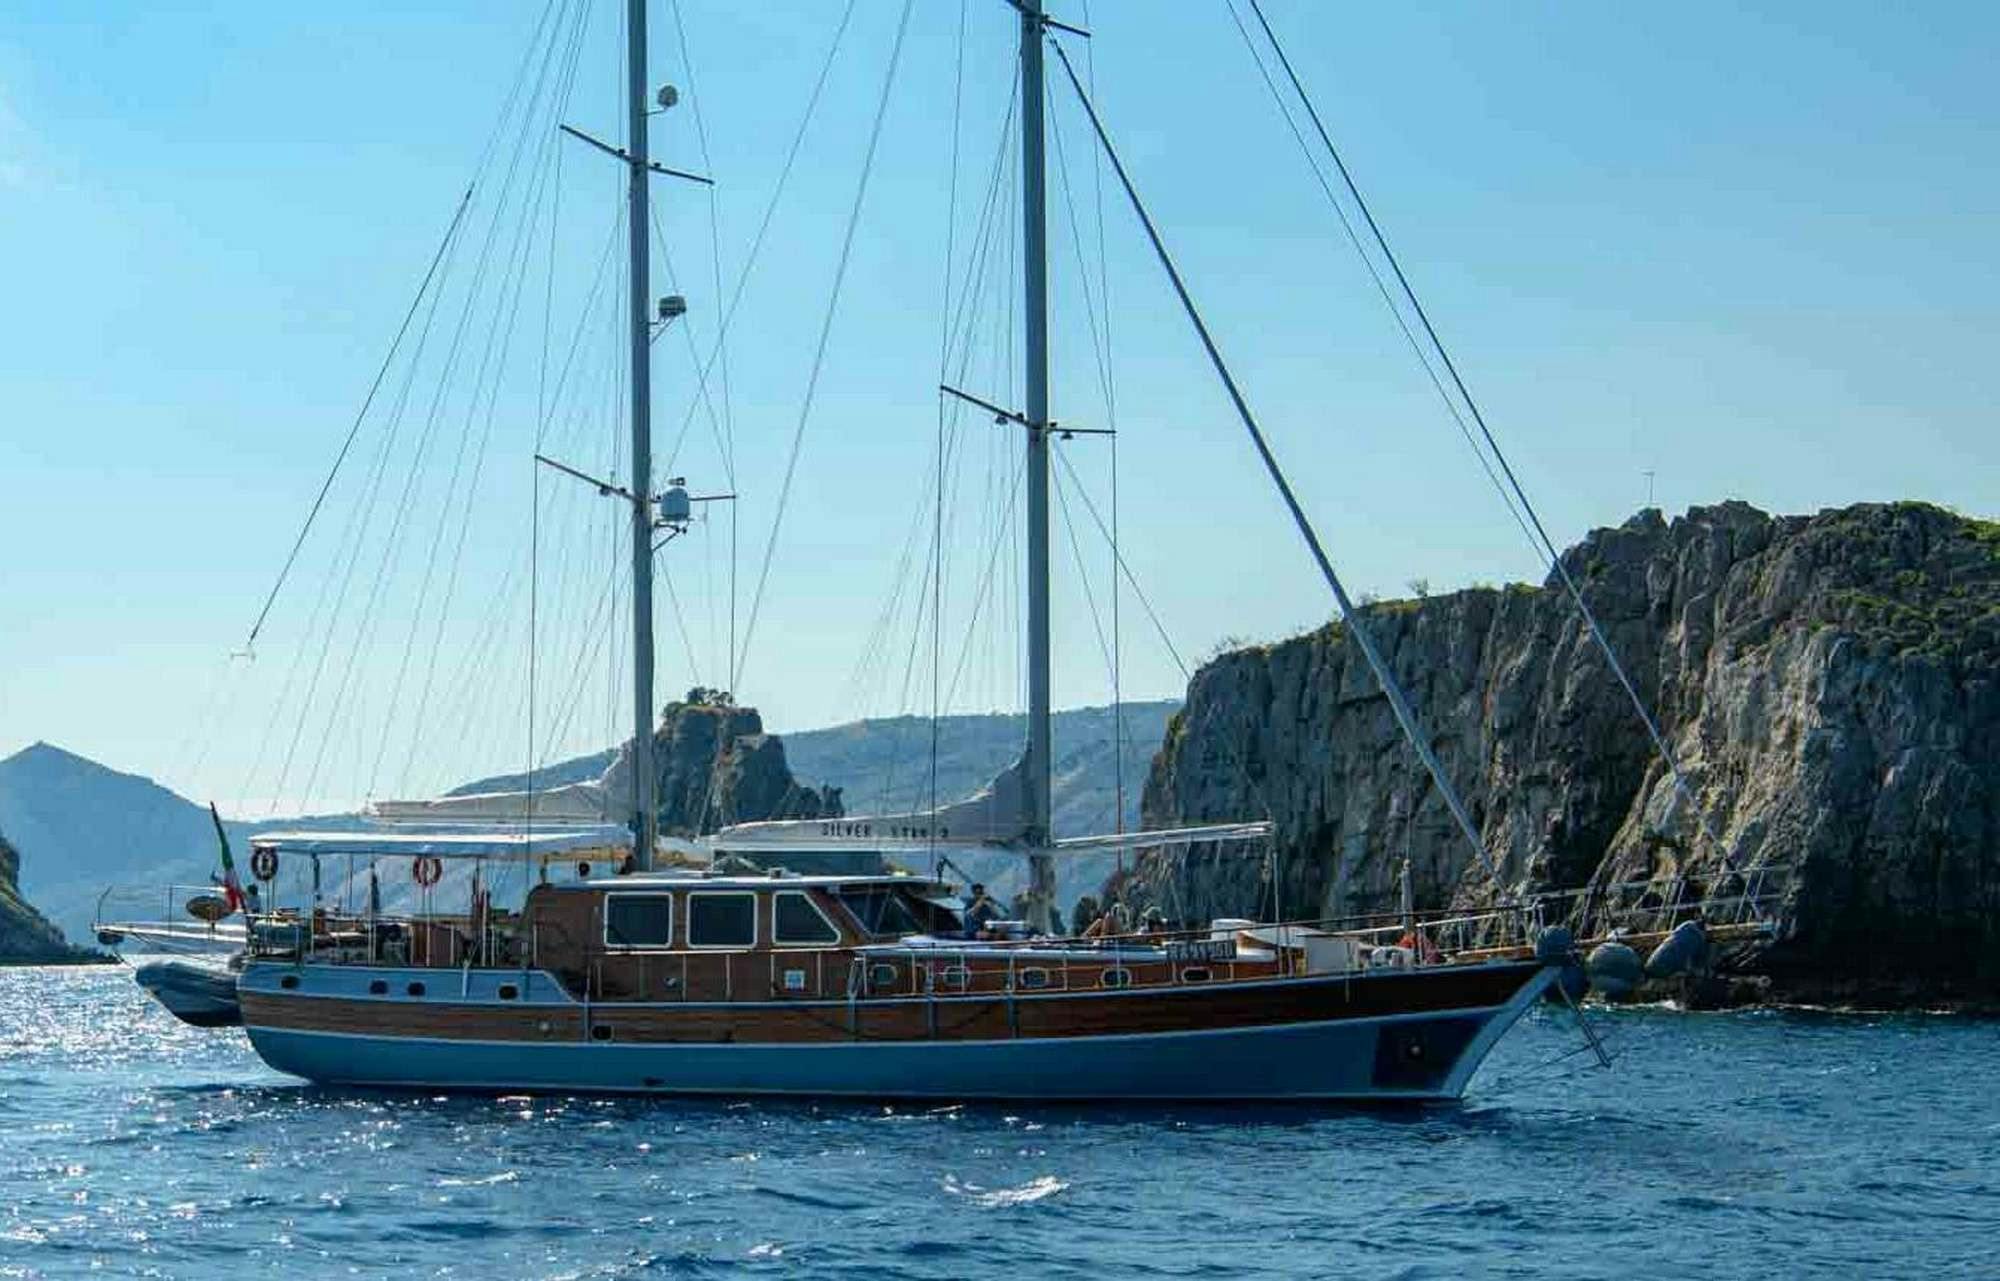 SILVER STAR 2 - Yacht Charter Toulon & Boat hire in Fr. Riviera & Tyrrhenian Sea 1